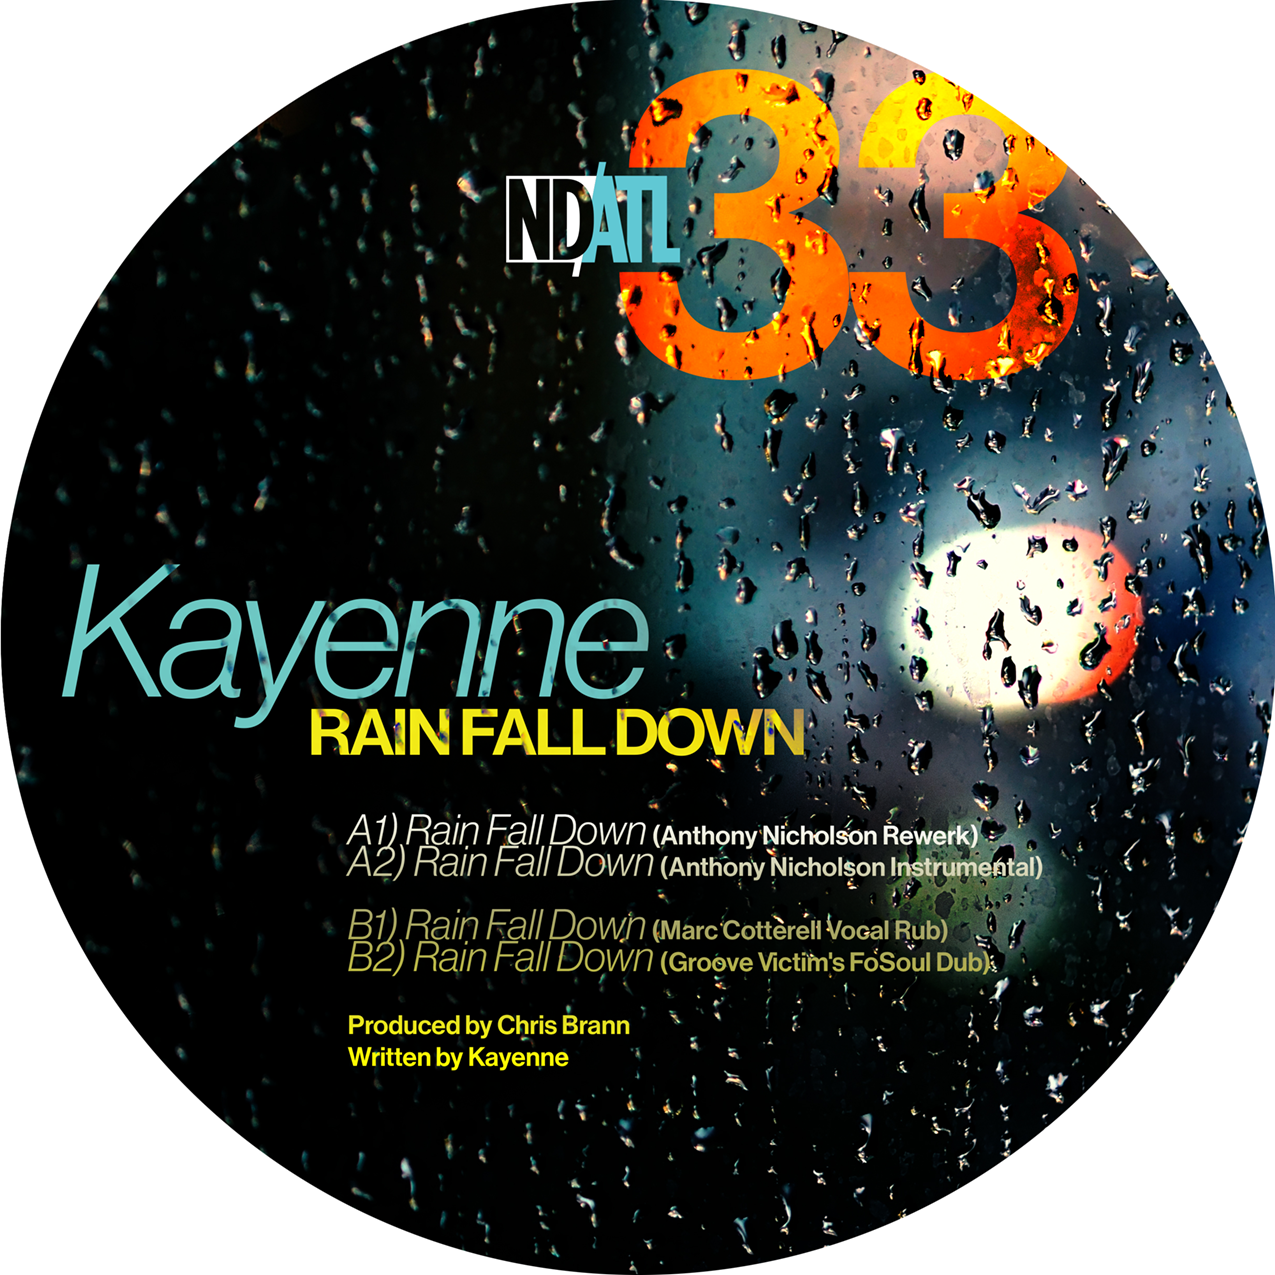 KAYENNE 'RAIN FALL DOWN (REMIXES)' 12"